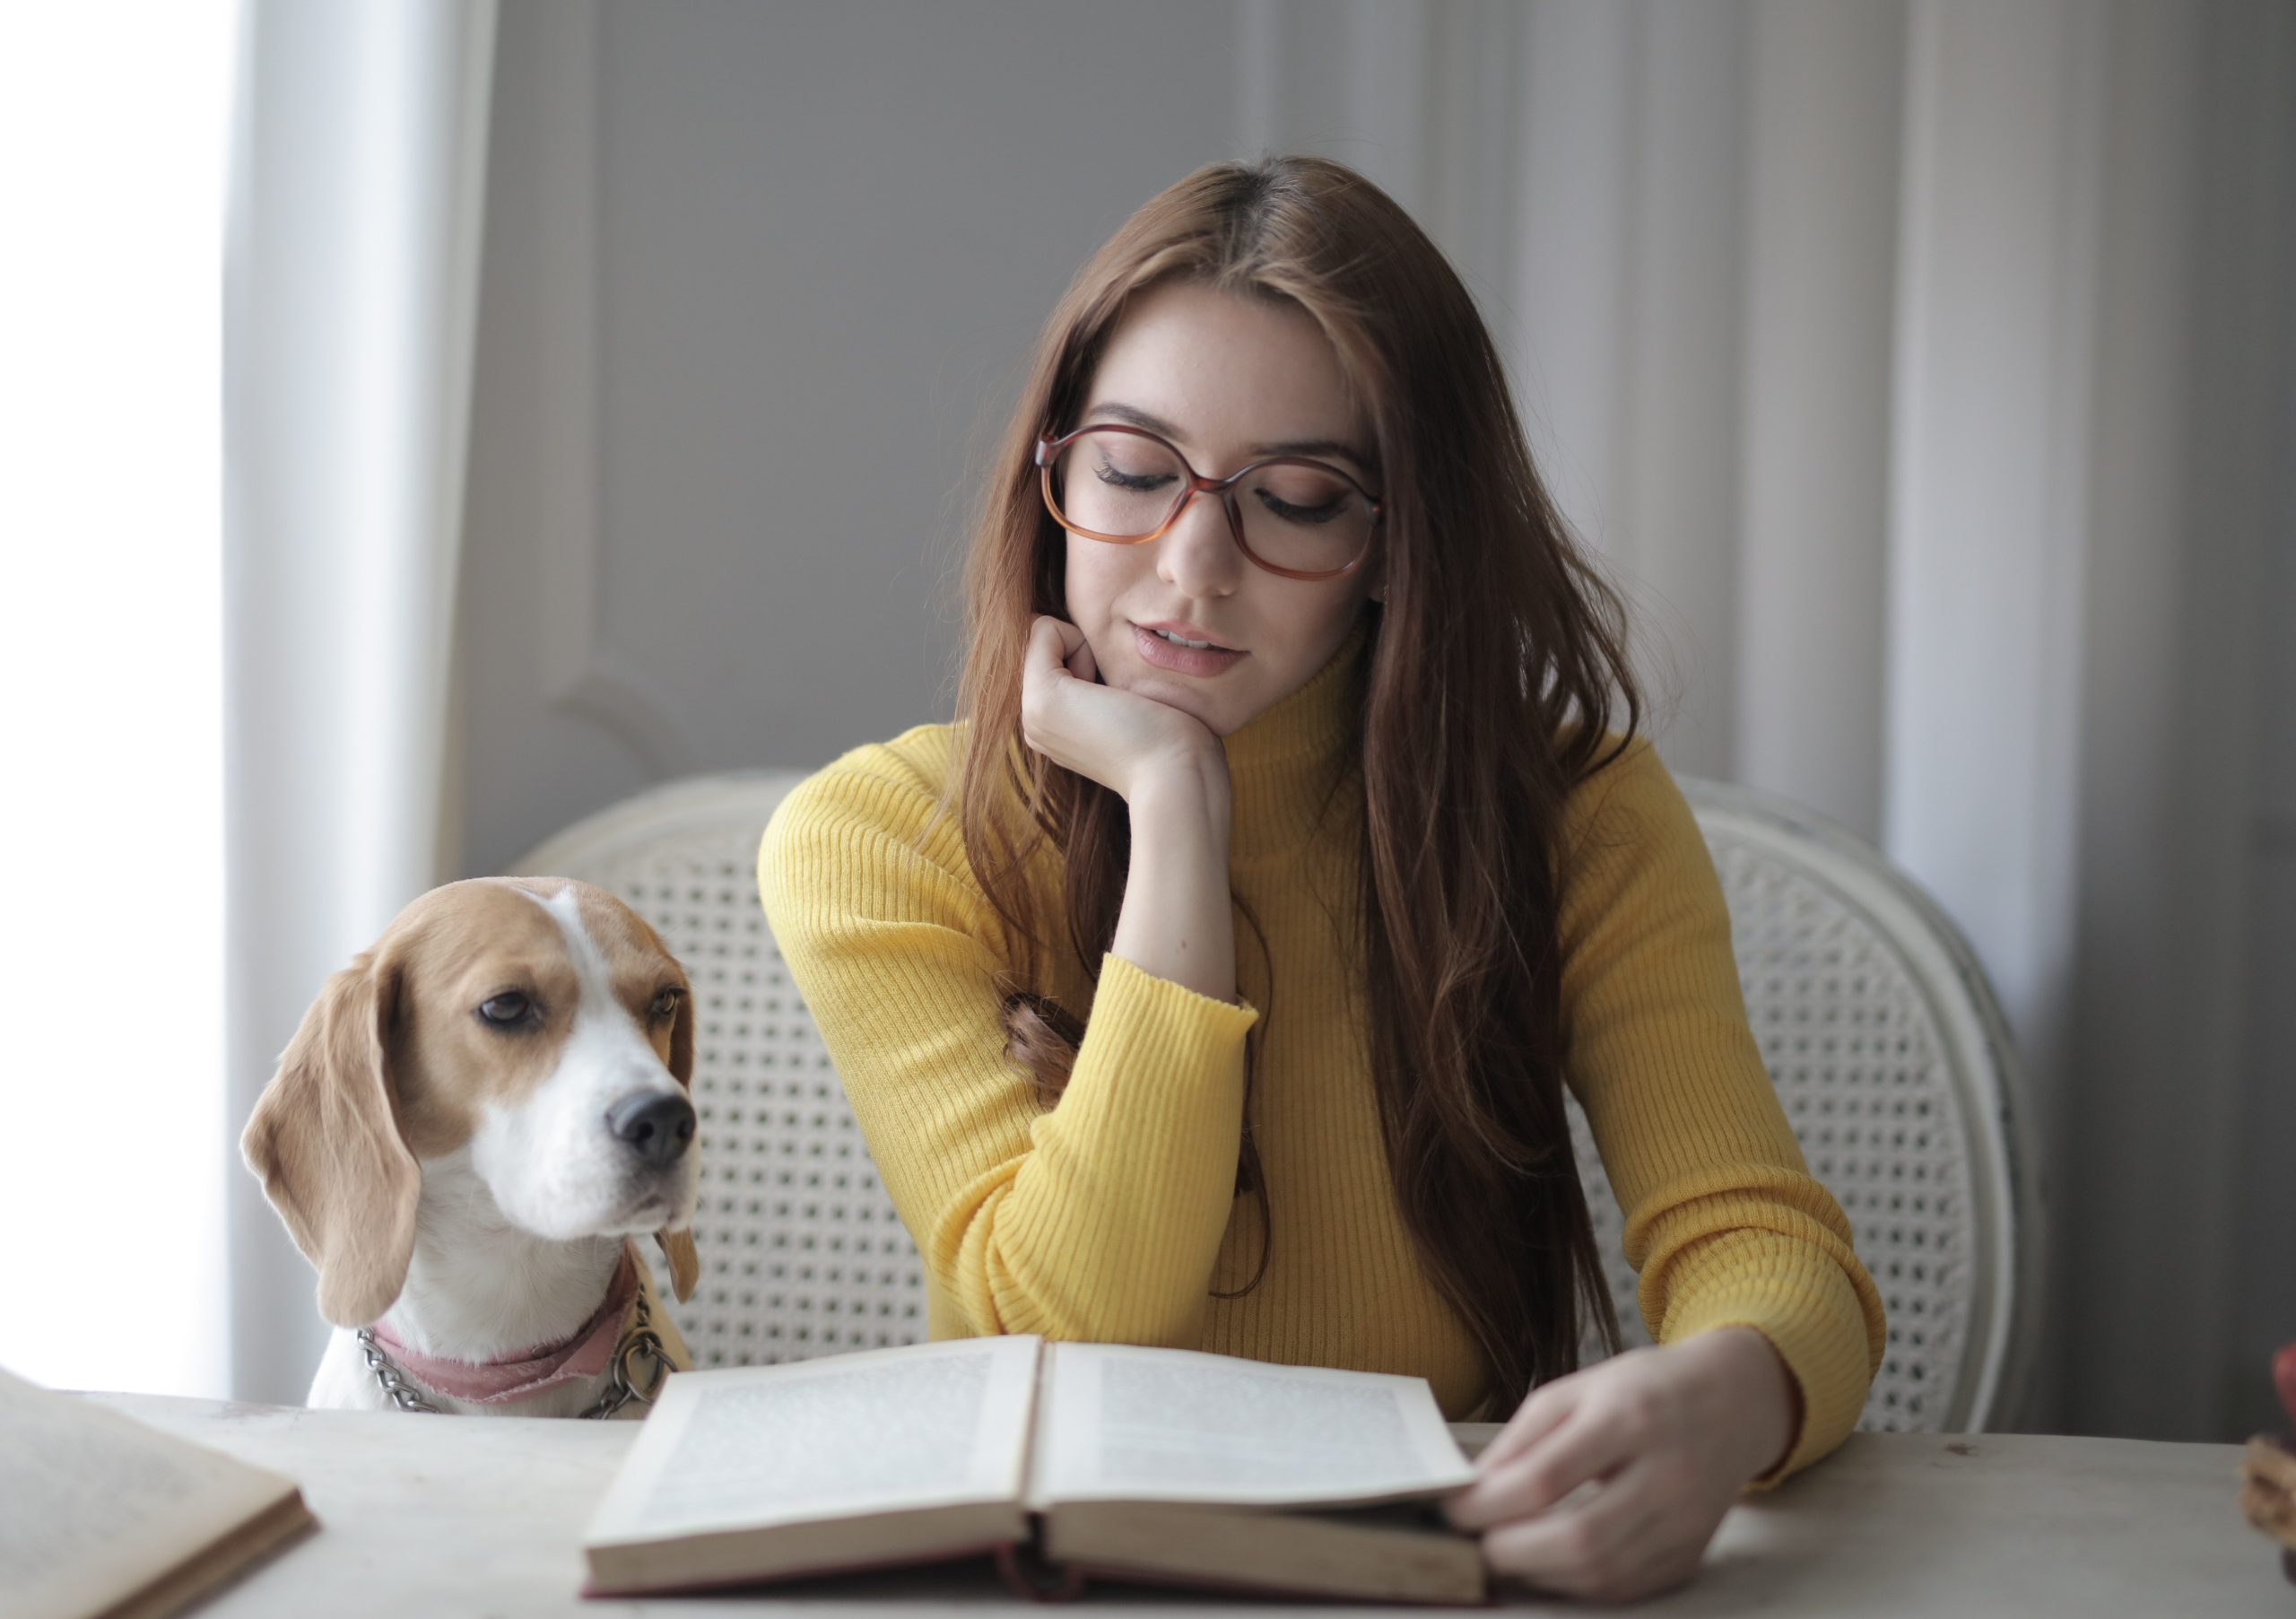 Valkeakosken ammattiopisto, VAAO. Opiskelija lukee kirjaa koira vierellään.